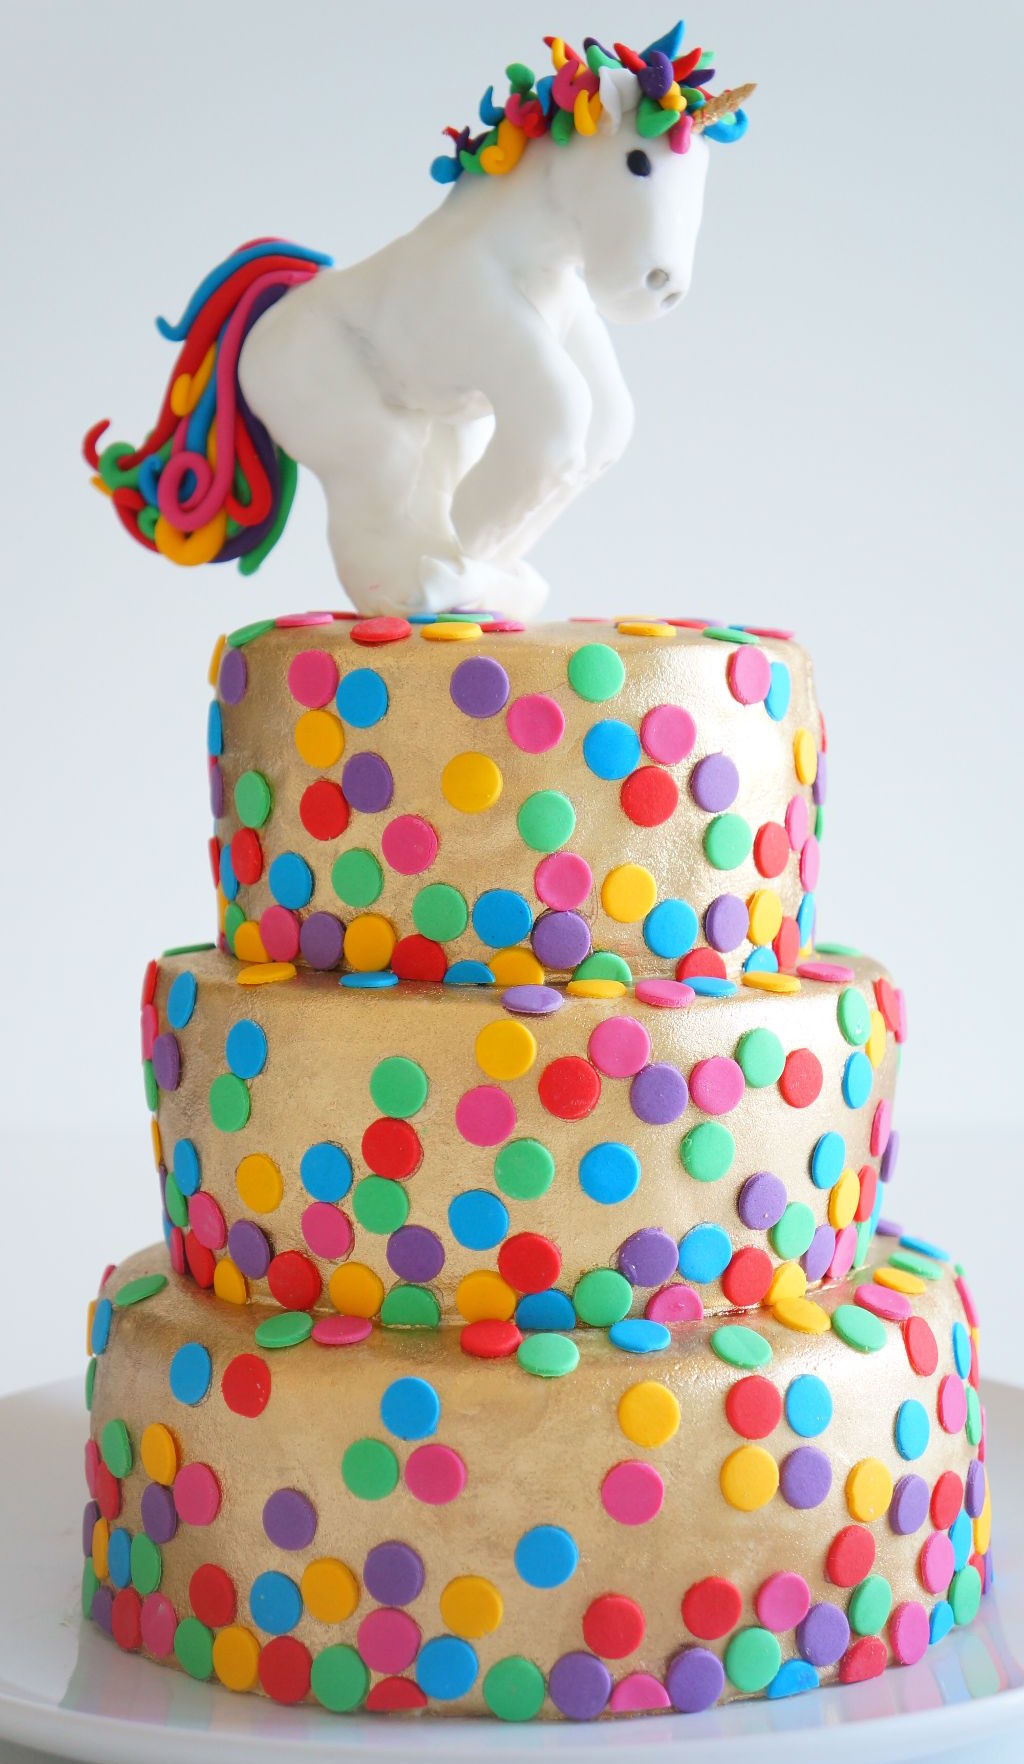 Kid's birthday Cake - Rainbow unicorn cake from Susucre